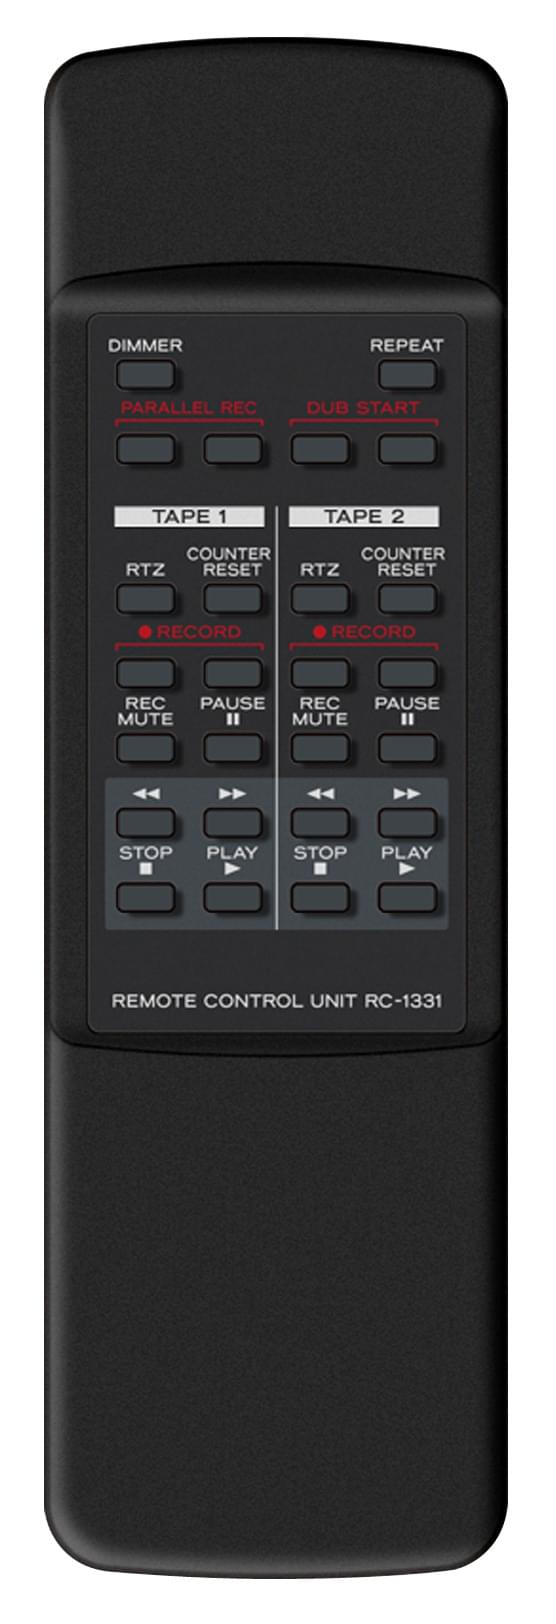 Remote control | Tascam 202MKVII